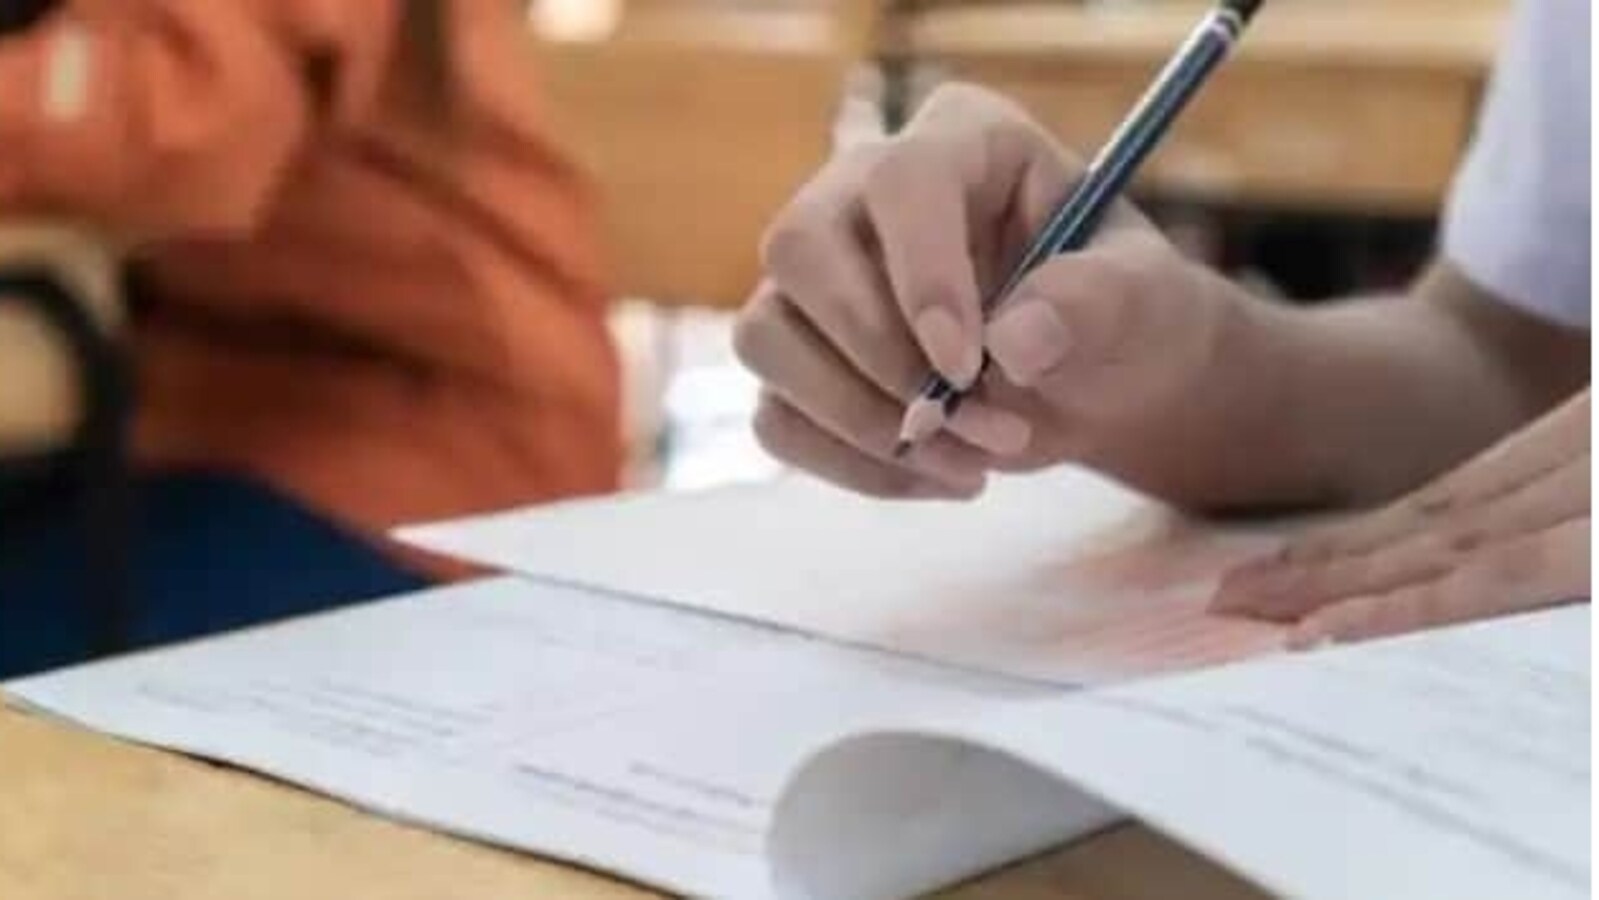 महाराष्ट्र सीईटी परीक्षा 2022: संशोधित हॉल टिकट और परीक्षा कार्यक्रम जारी